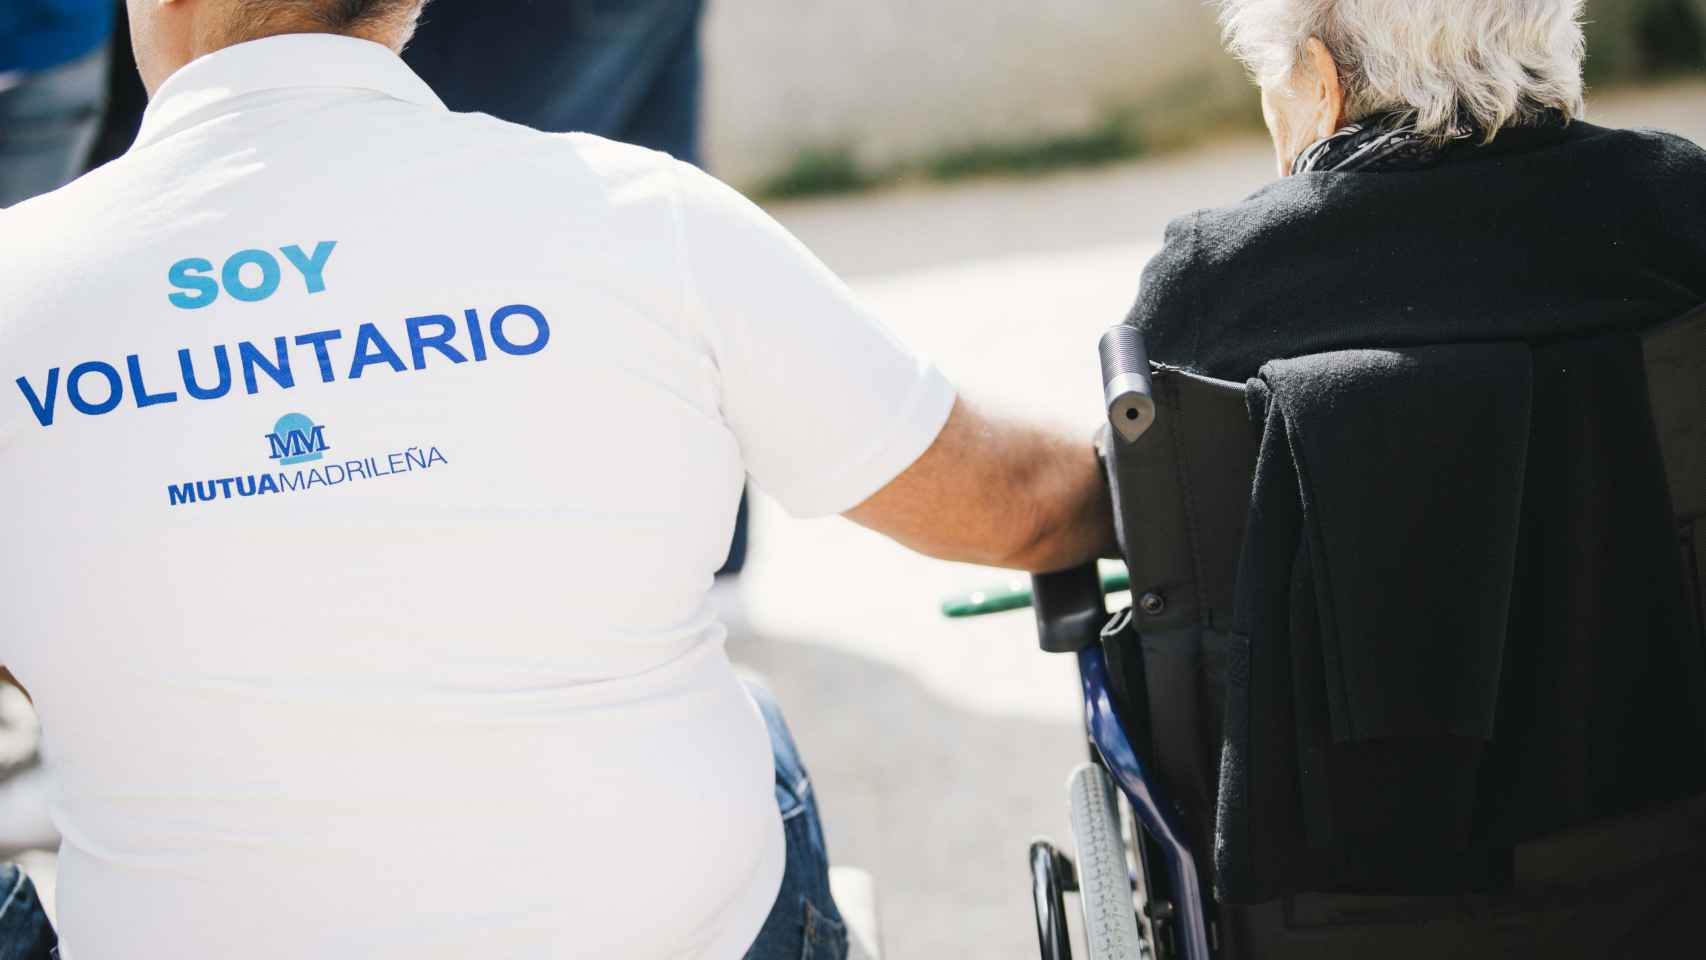 Un voluntario de Mutua Madrileña ayuda a una persona mayor con movilidad reducida.